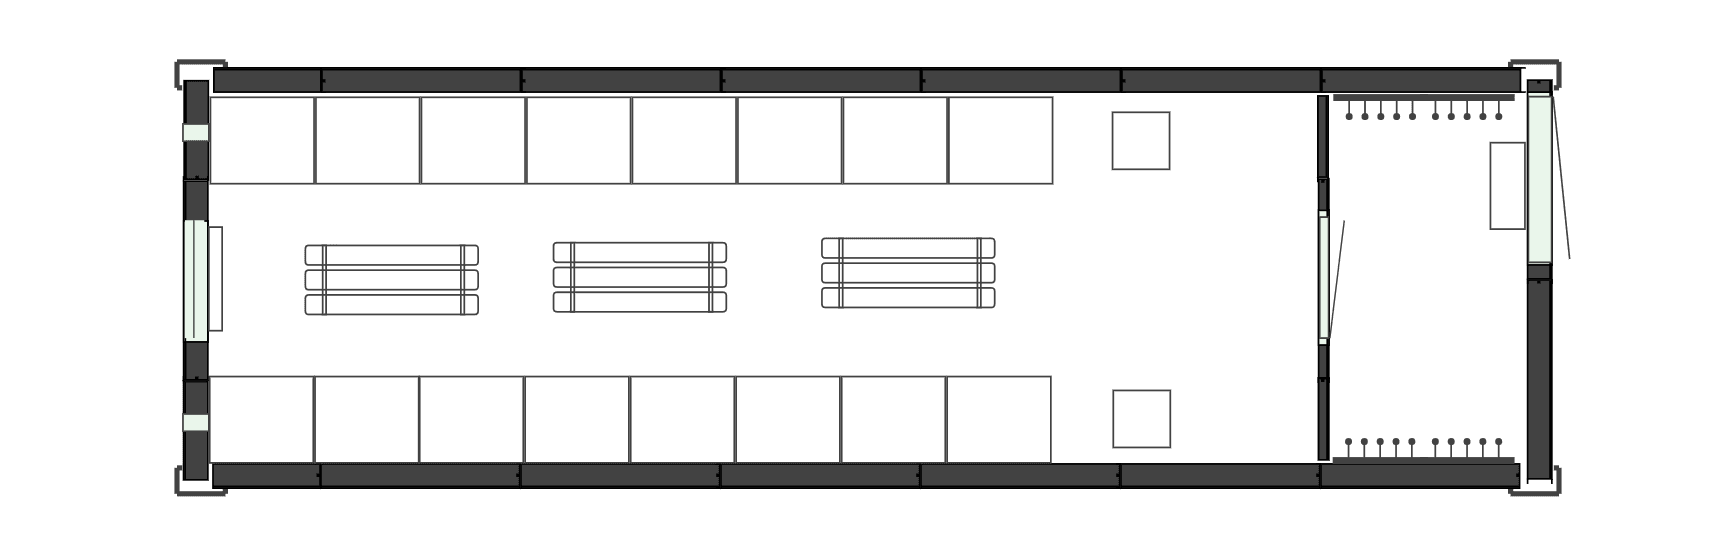 Планировочное решение - Блок-контейнер для сушилки на 32 кабинки